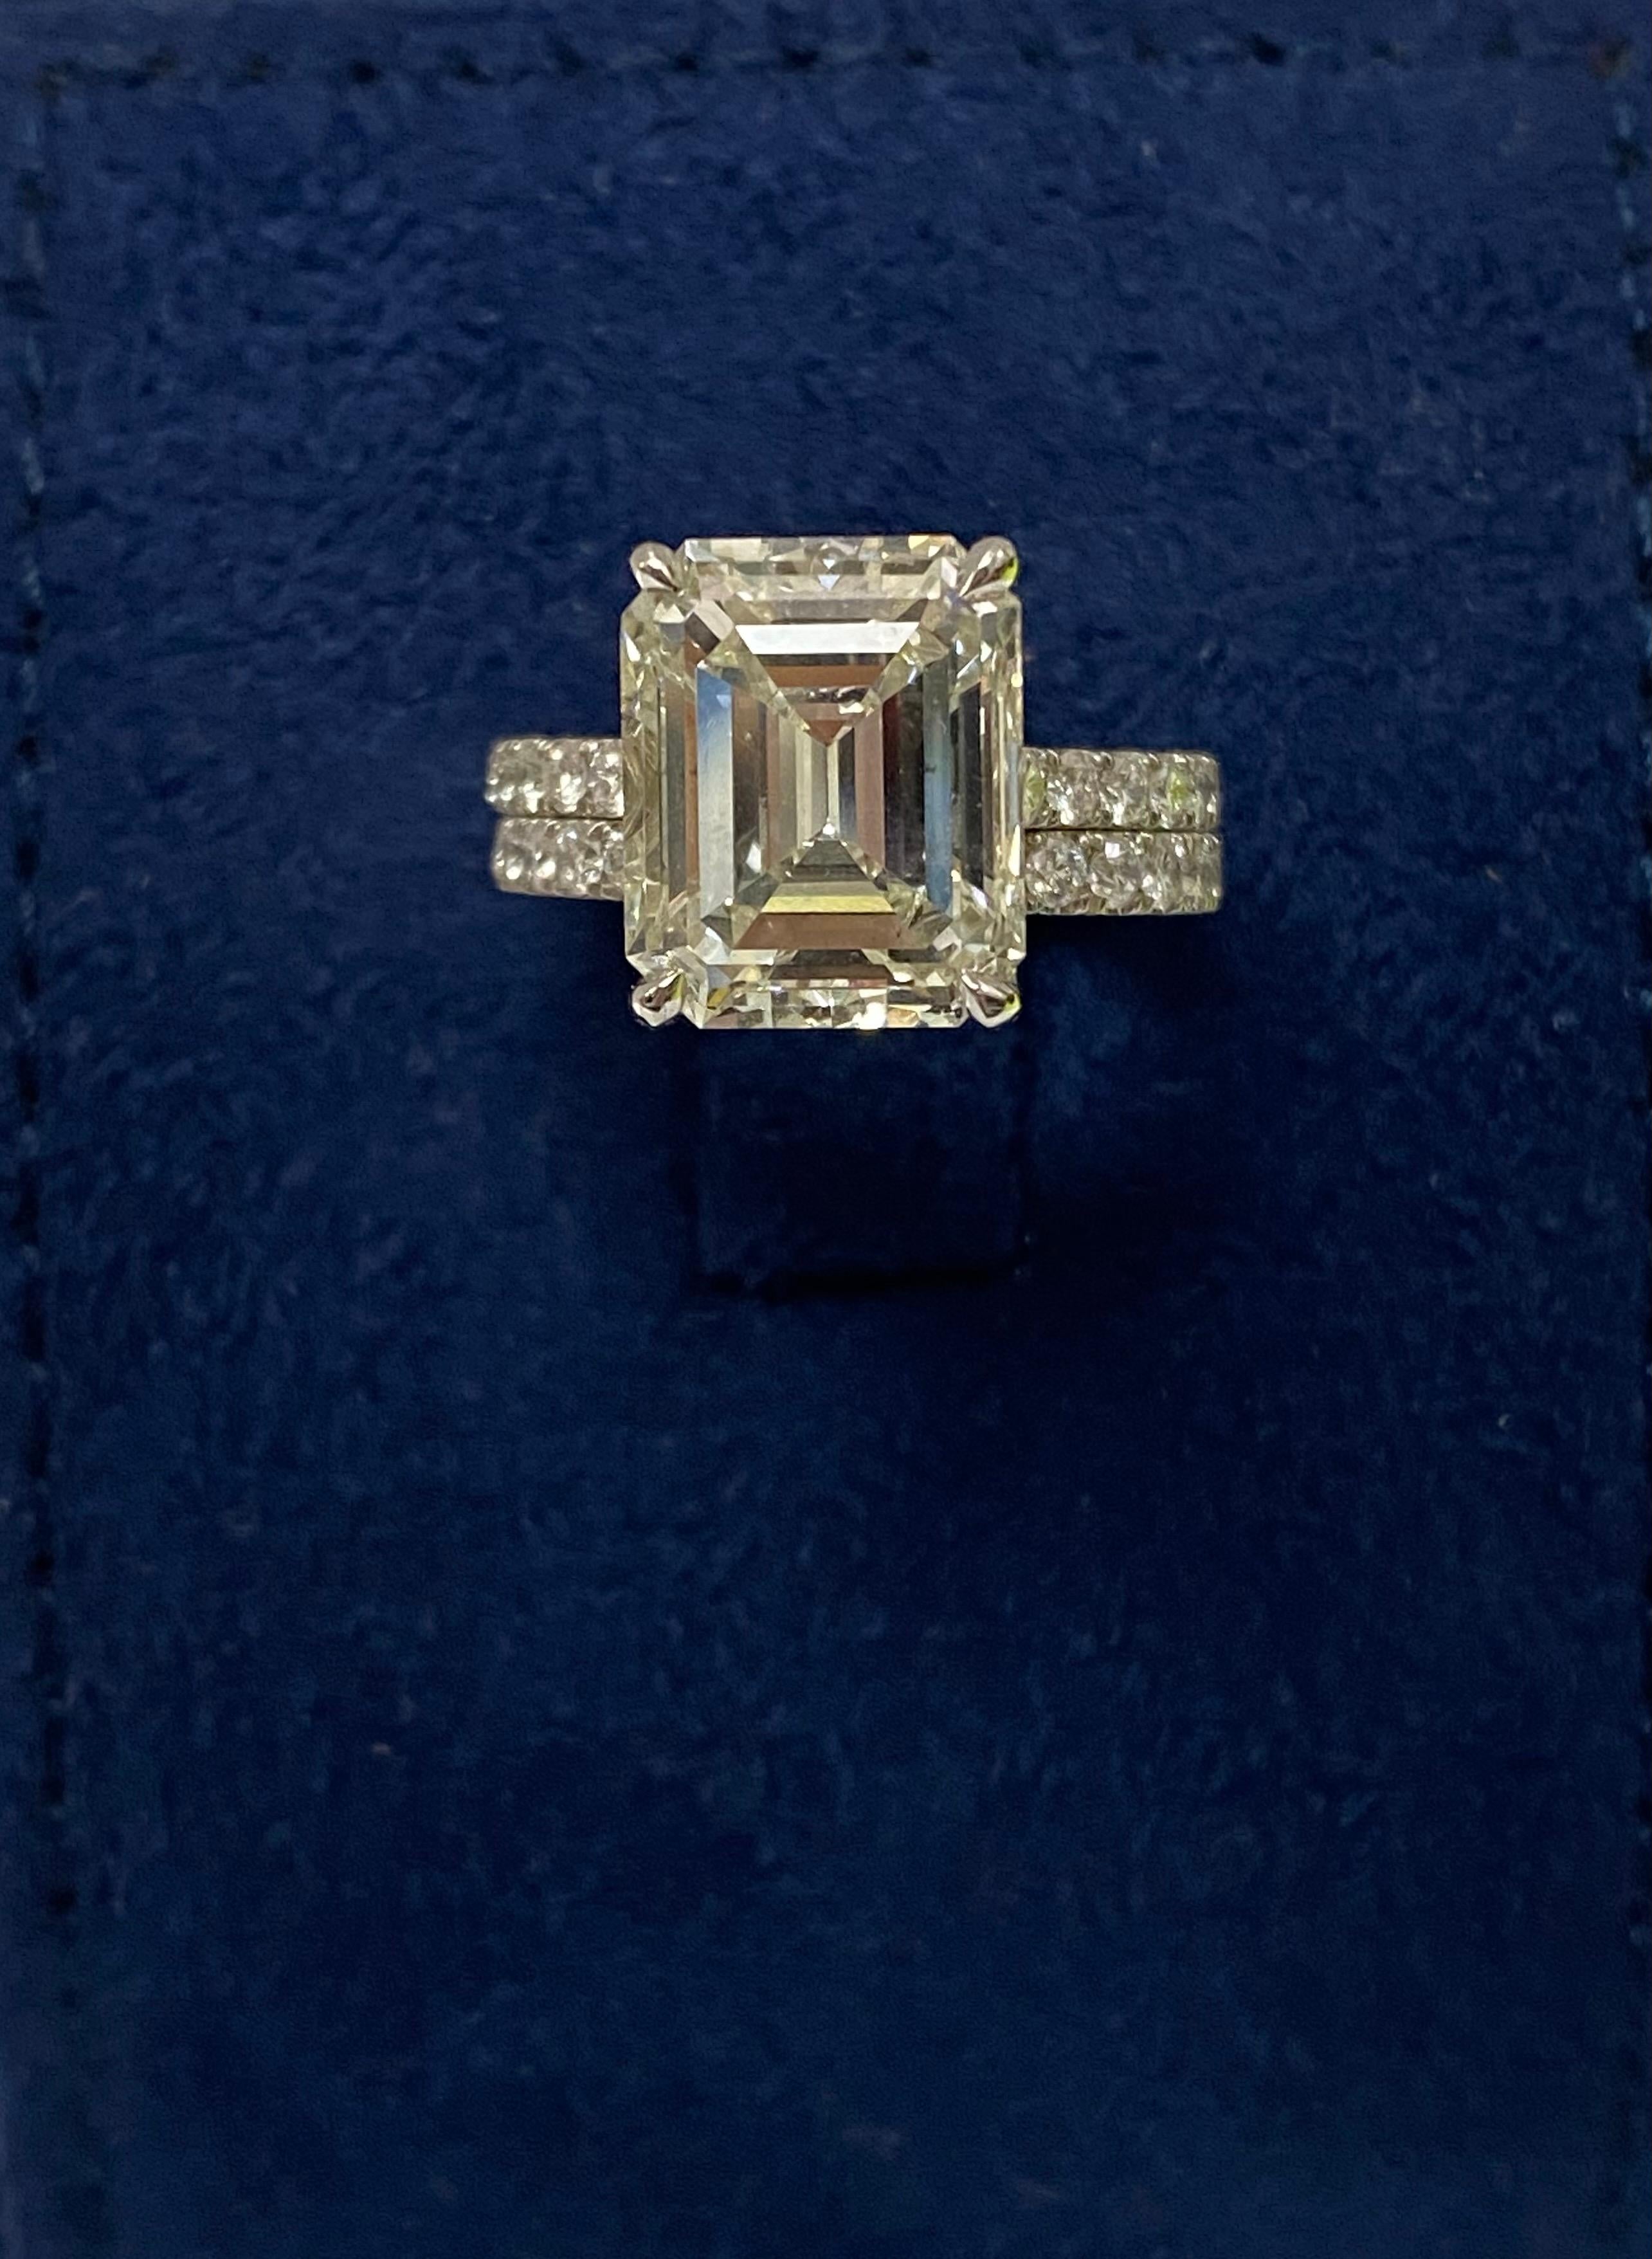 4 carat engagement ring